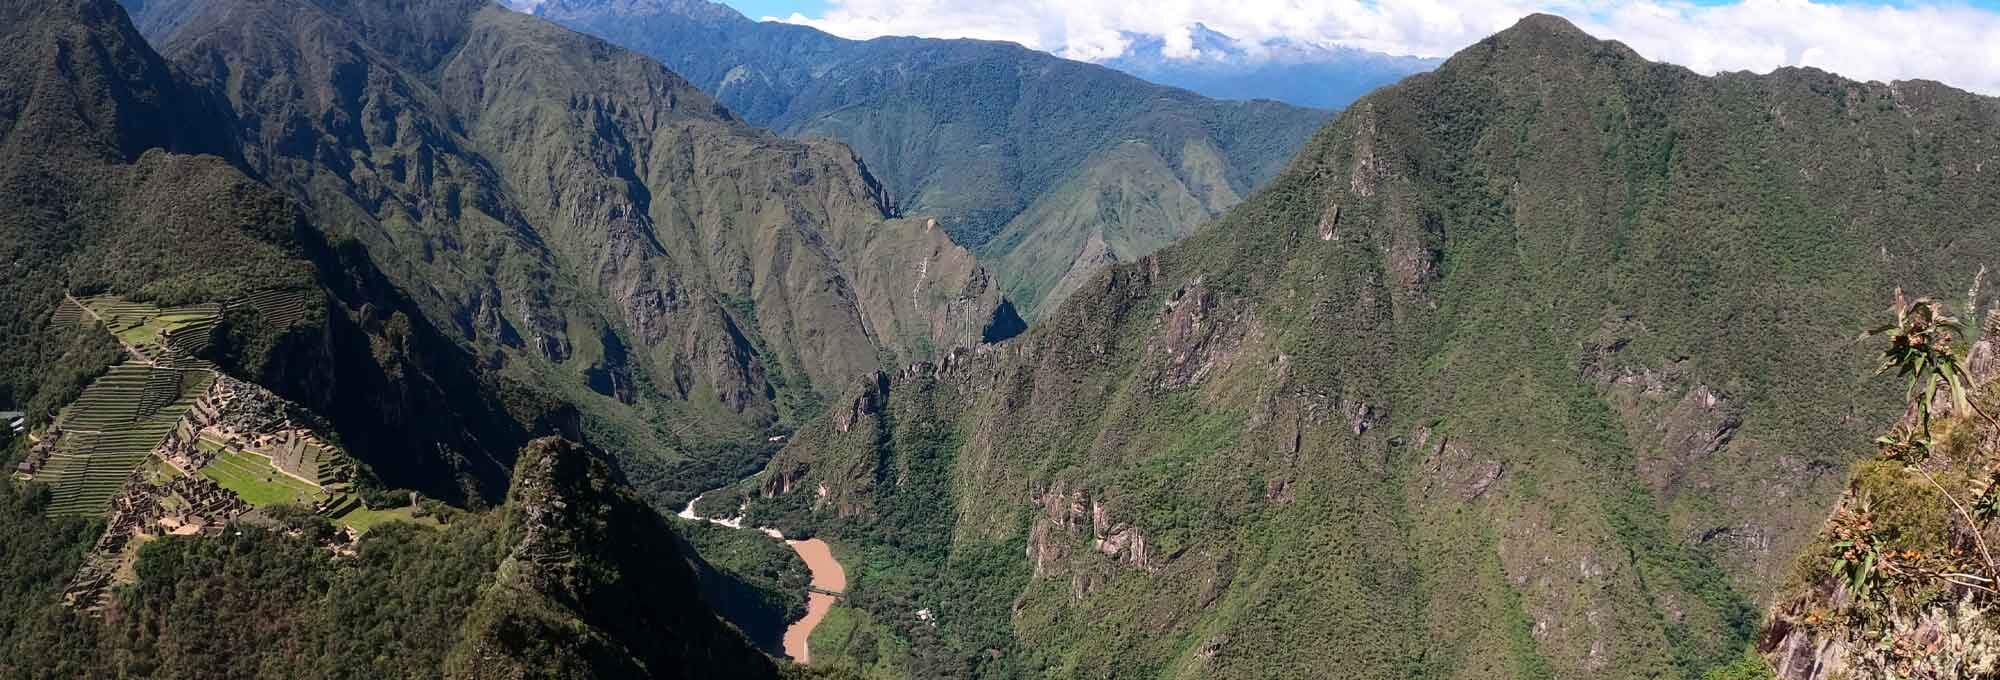 Inca Jungle Trek 4 Days to Machu Picchu